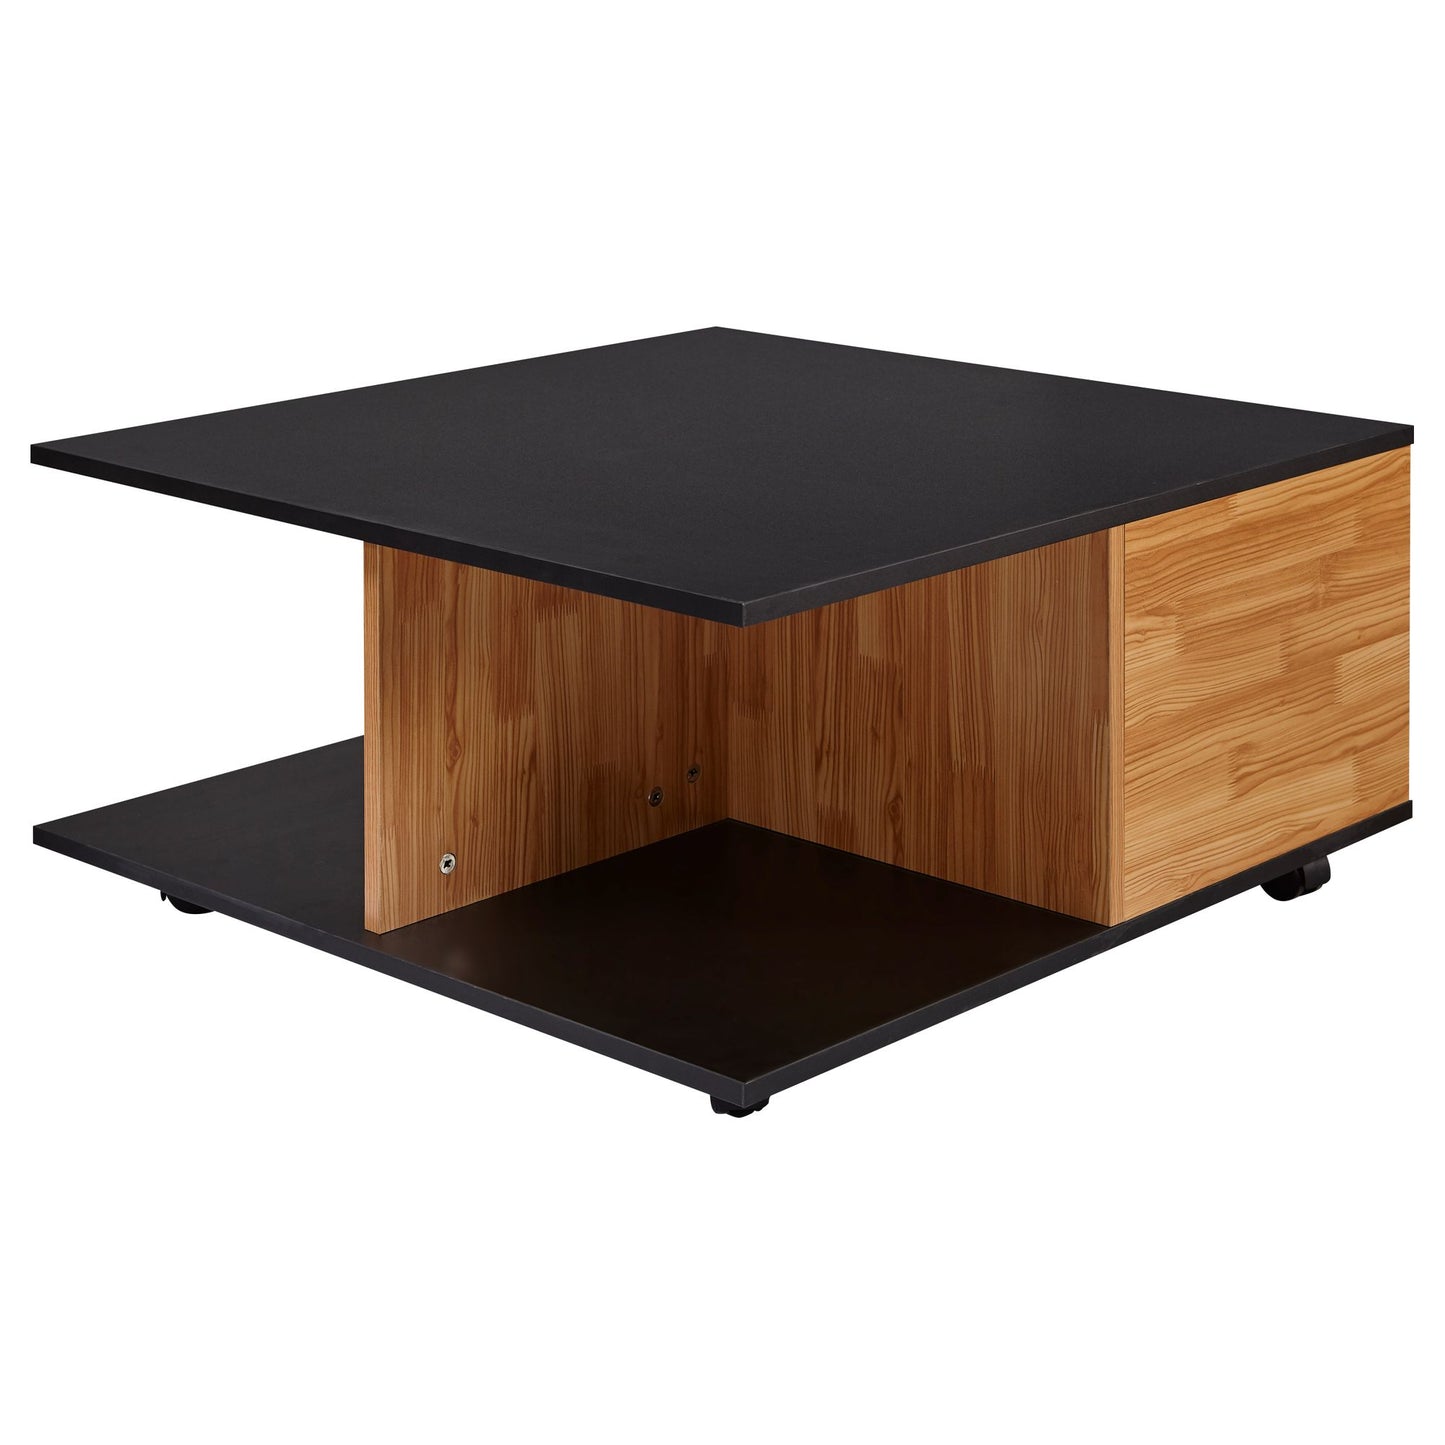 Design salontafel 70x70 cm antraciet / zand eiken | Salontafel met 2 laden en wielen